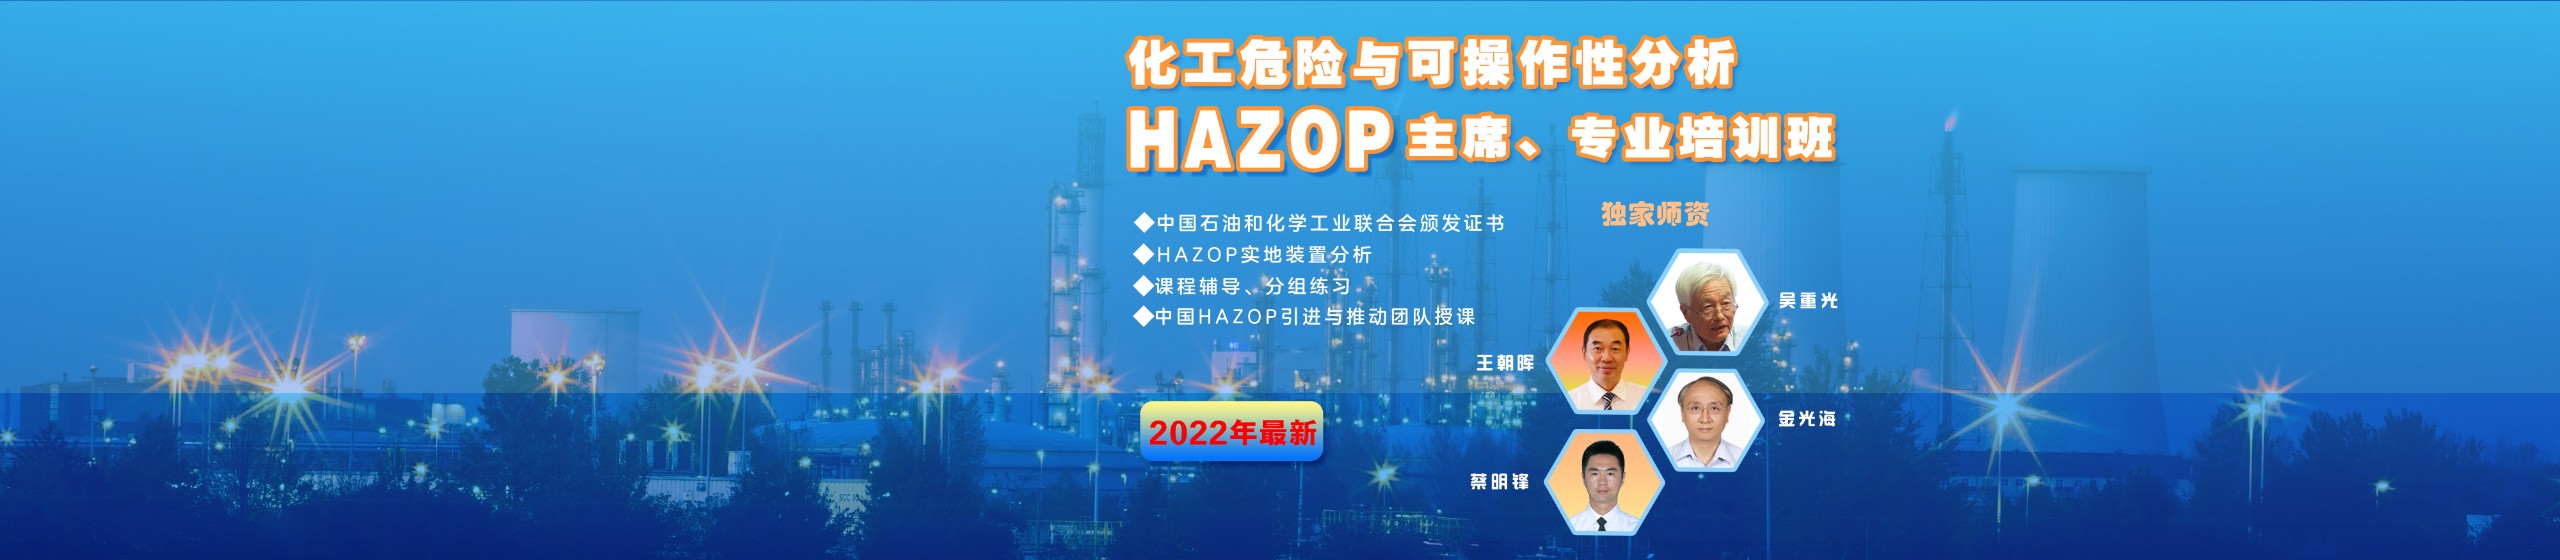 2022年HAZOP培训班